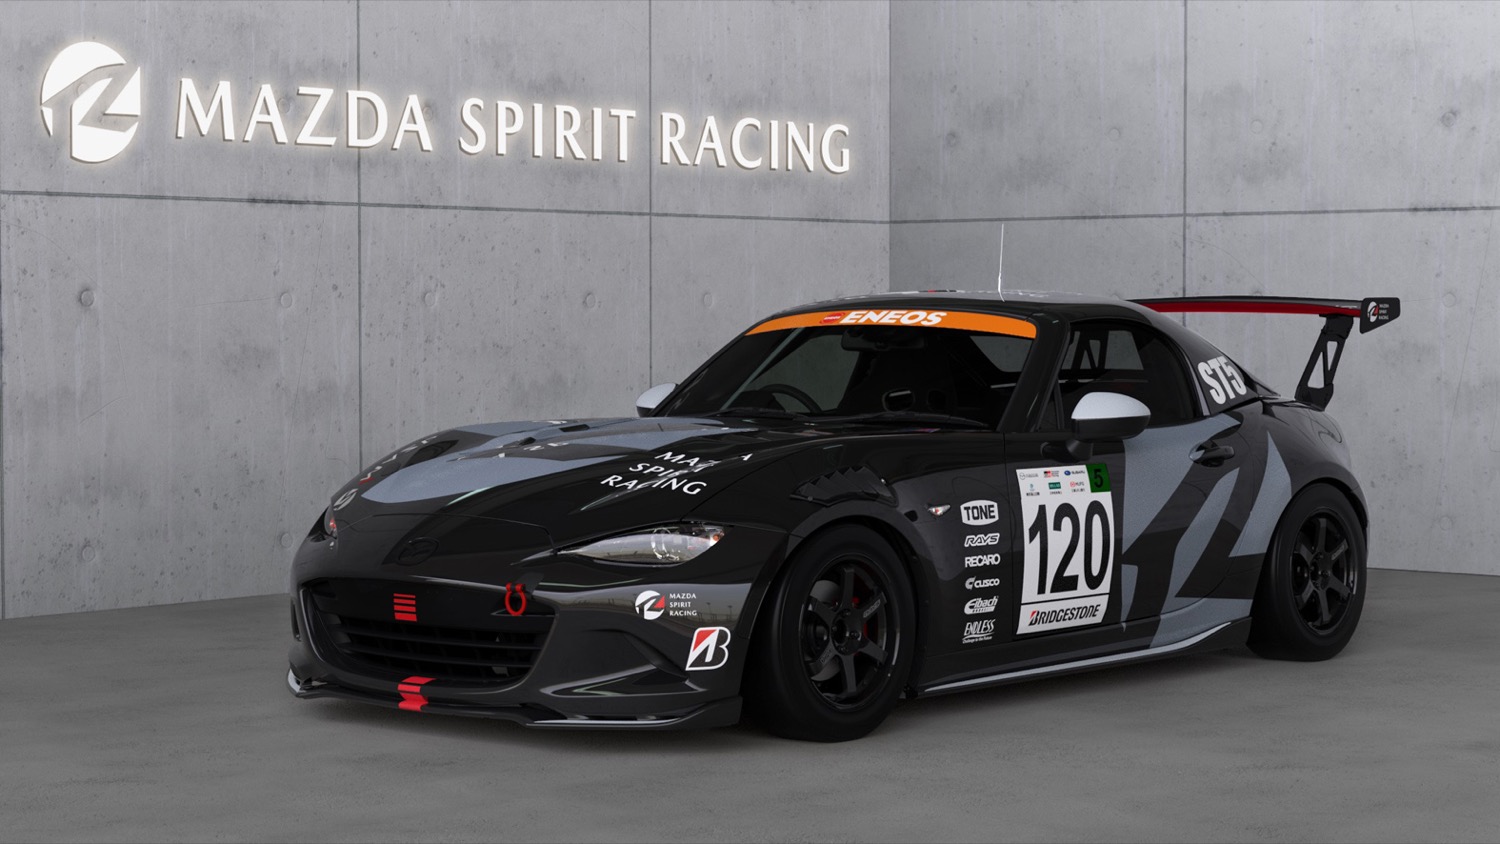 倶楽部MAZDA SPIRIT RACING ROADSTER CNF concept （120号車）のフロントビュー 〜 画像1